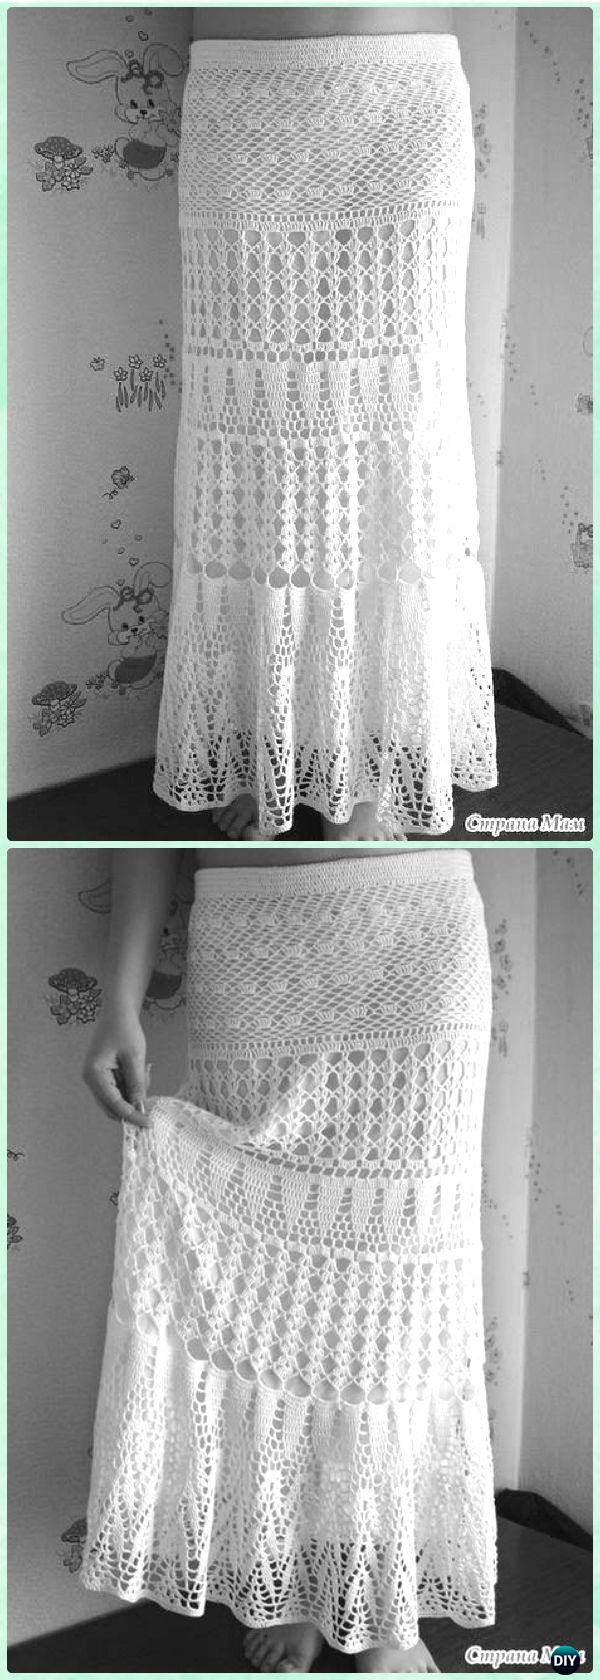 Crochet Maxi Skirt Pattern Crochet Women Skirt Free Patterns Instructions